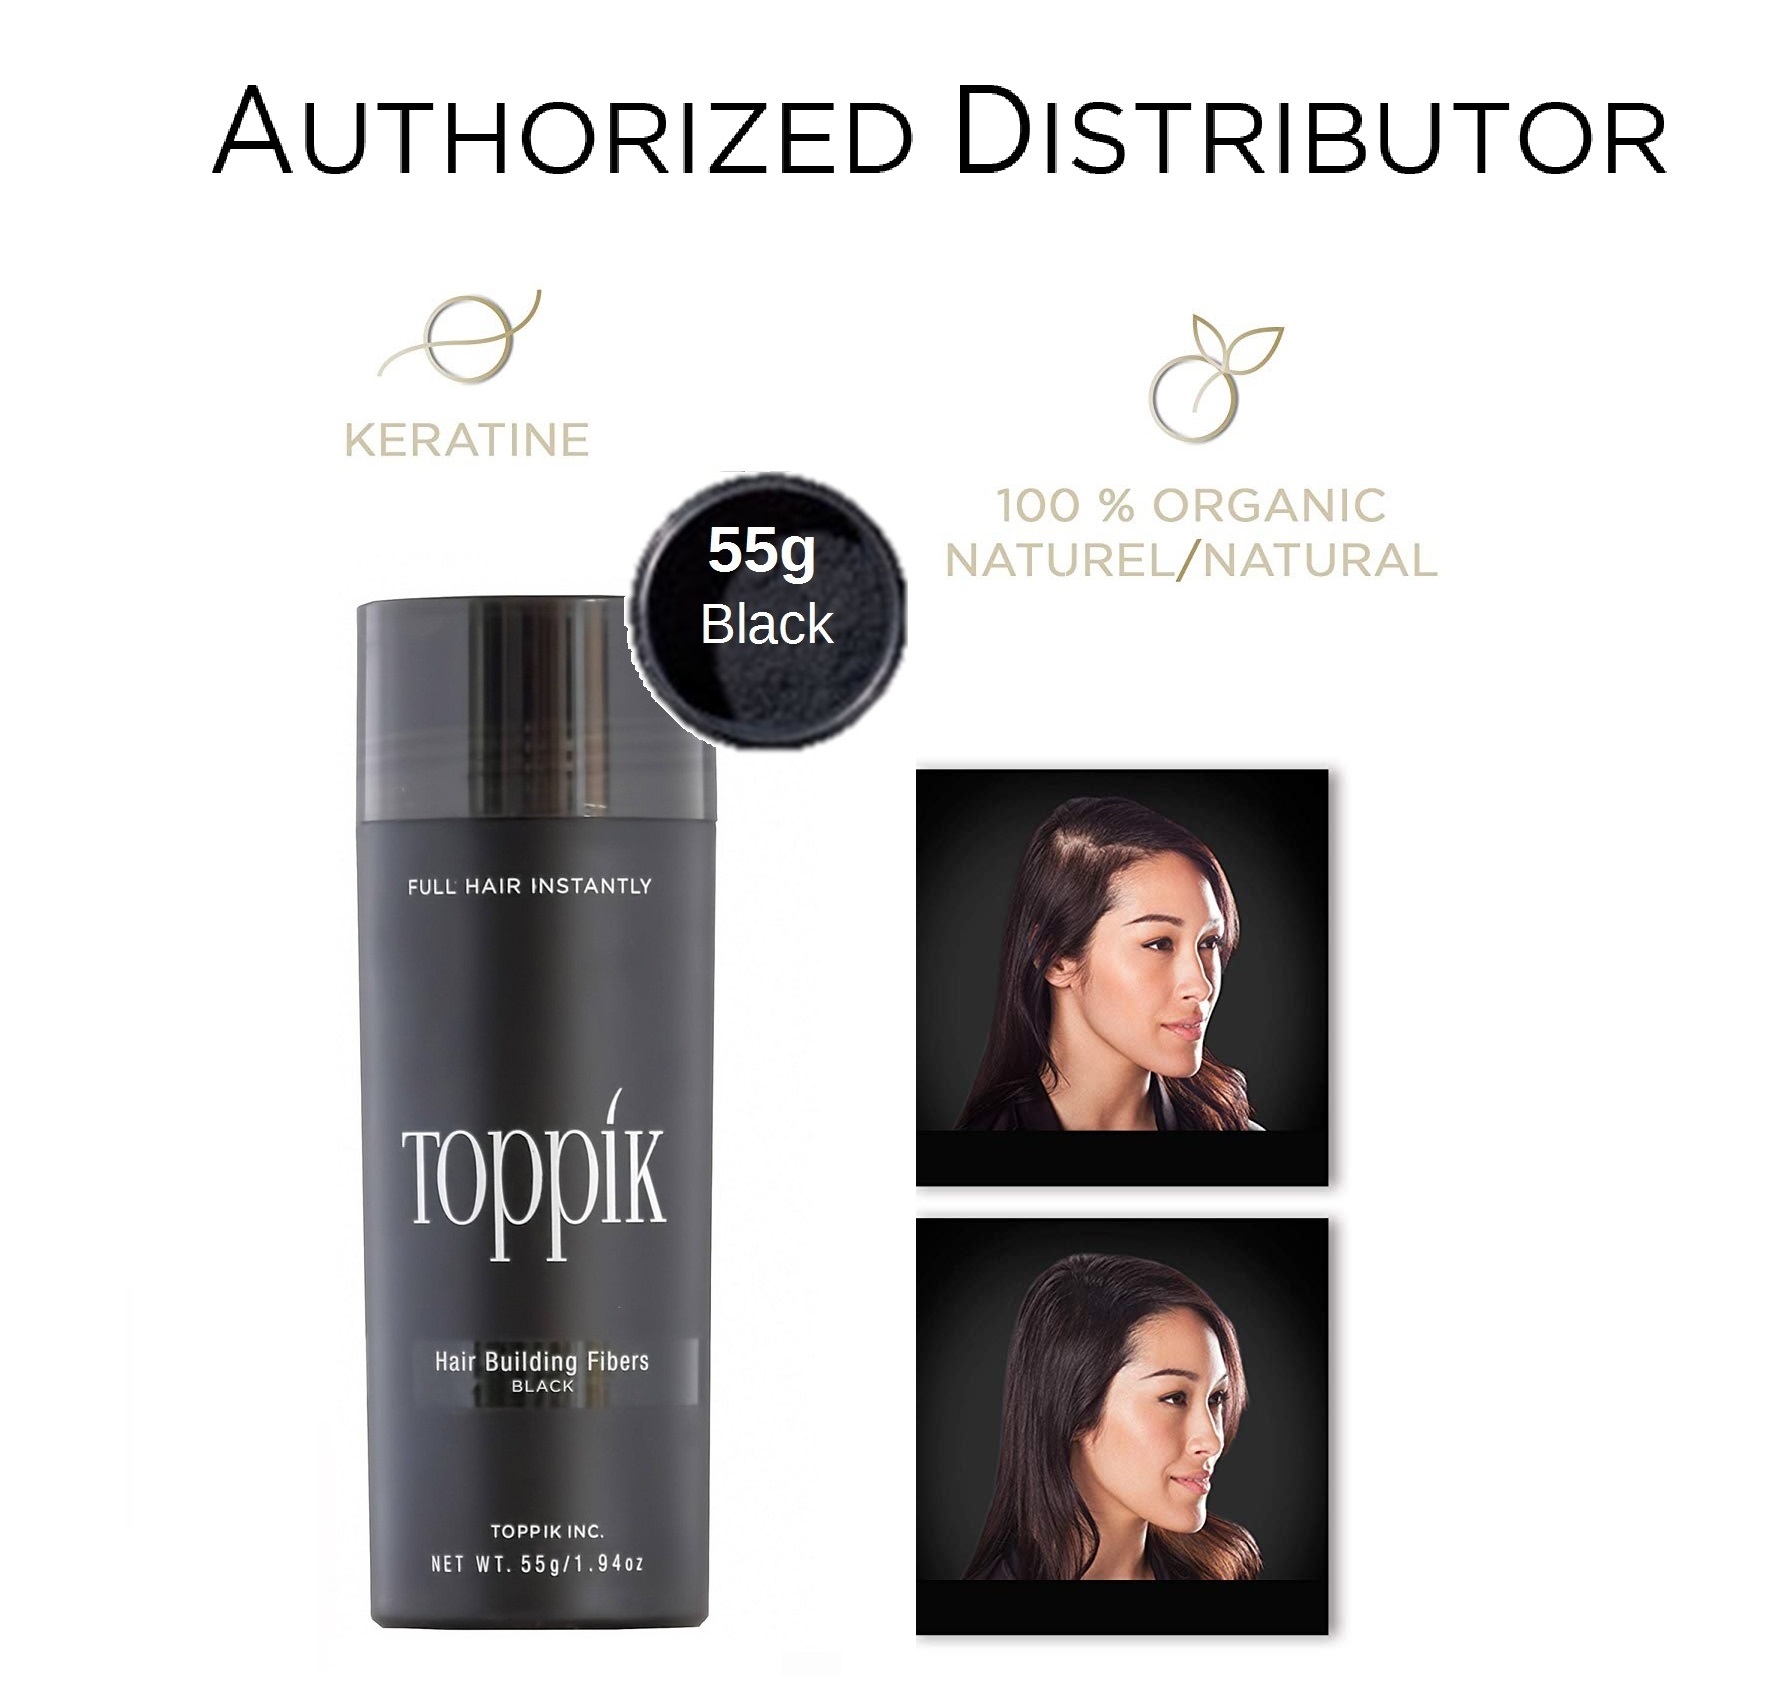 Toppik Hair Fiber 12g  Black Value Pack price in UAE  Amazon UAE  kanbkam